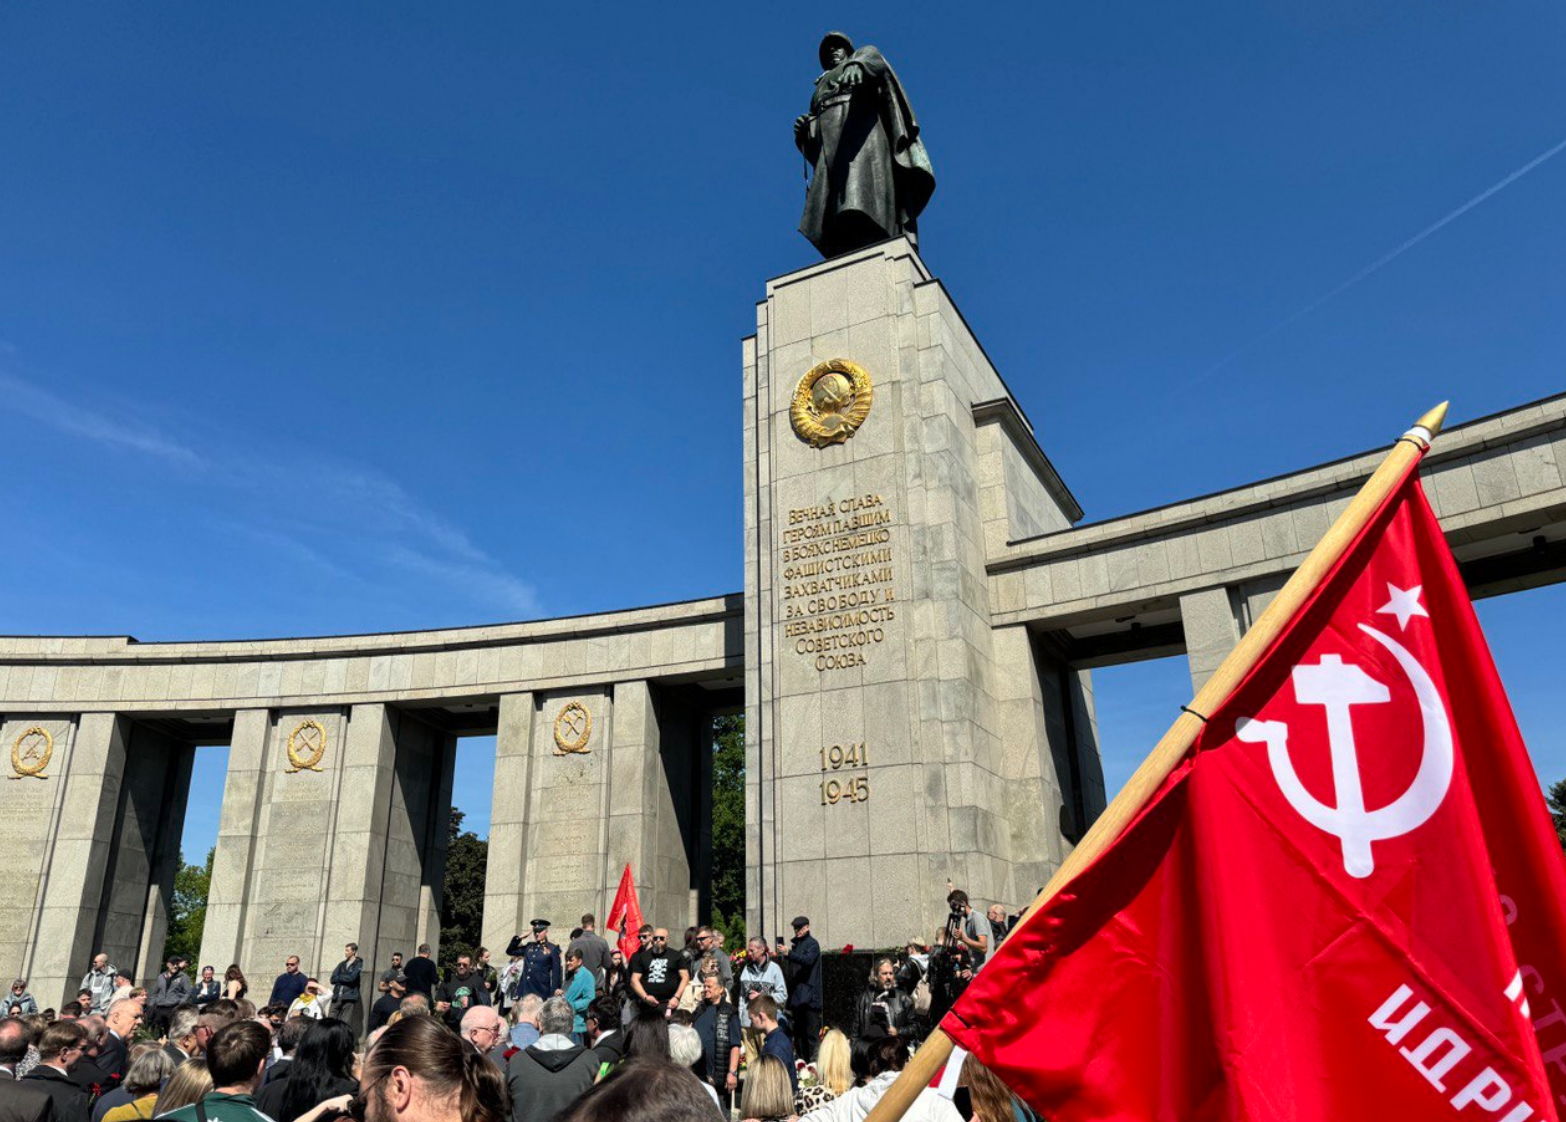 Несмотря на запрет берлинских властей, люди все равно встретили праздник со Знаменем Победы.